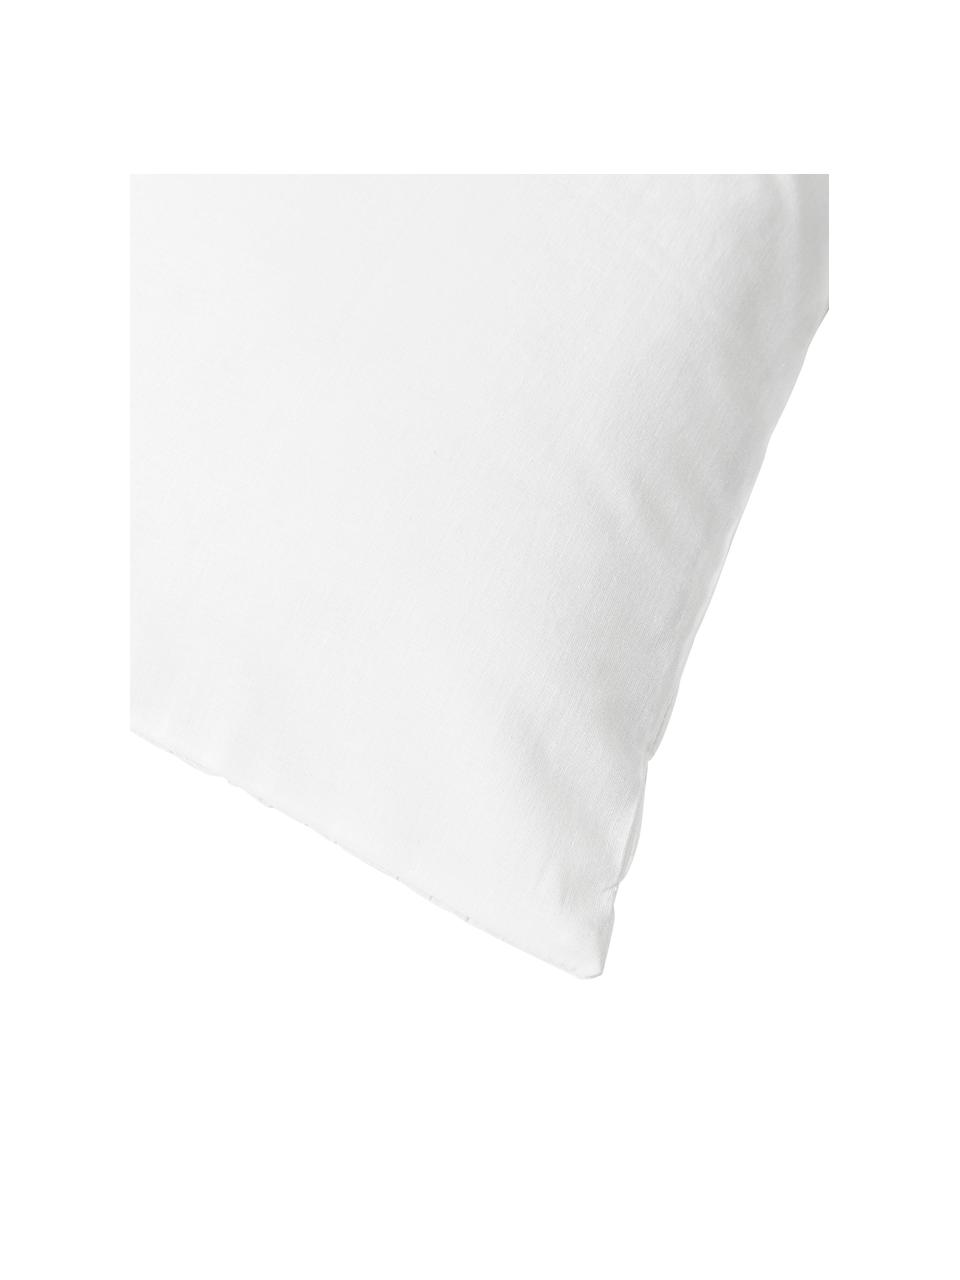 Housse de couette réversible coton blanc Esme, Blanc, larg. 200 x long. 200 cm